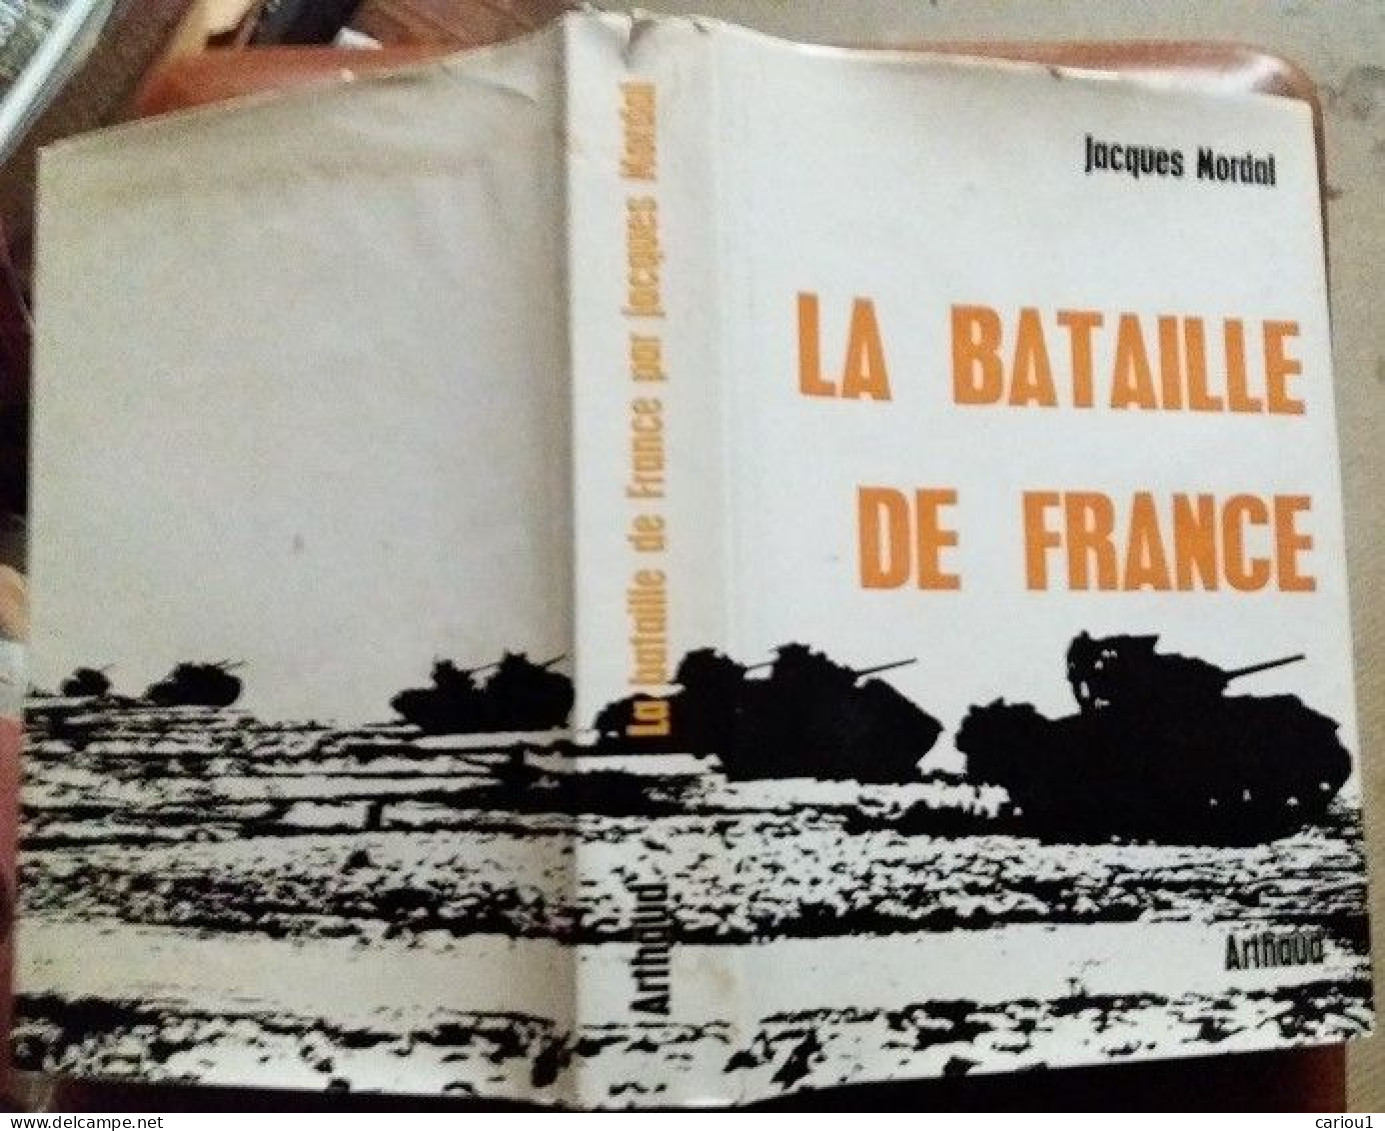 C1 Jacques MORDAL La BATAILLE DE FRANCE 1944 1945 Relie ILLUSTRE Epuise CARTES Port Inclus France - Français